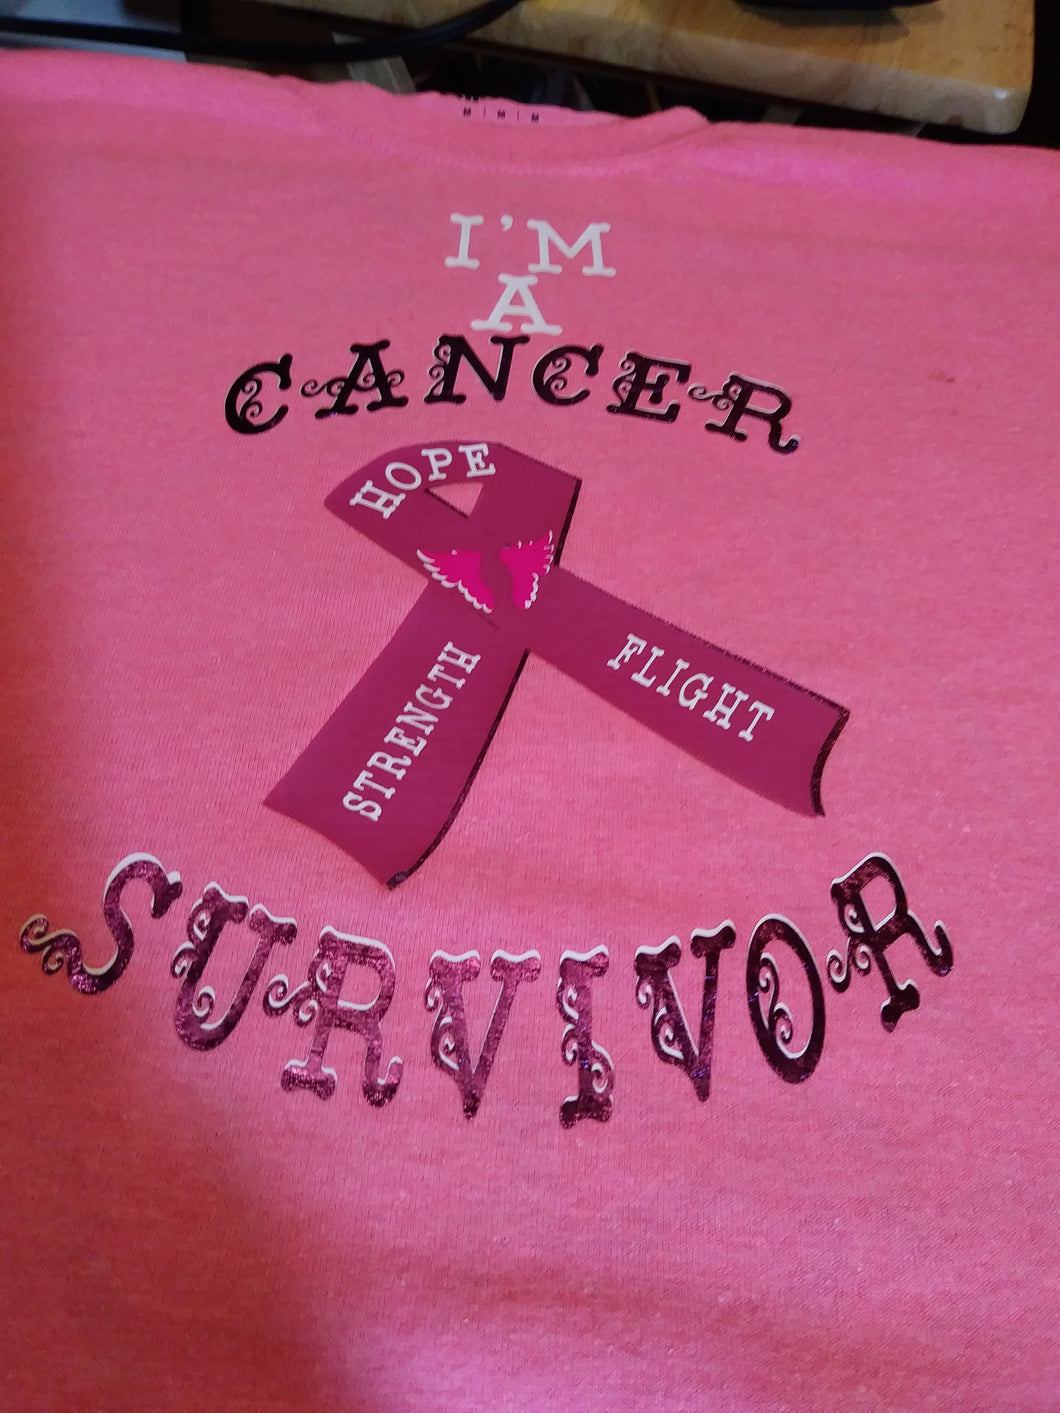 I 'm a cancer survivor shirt